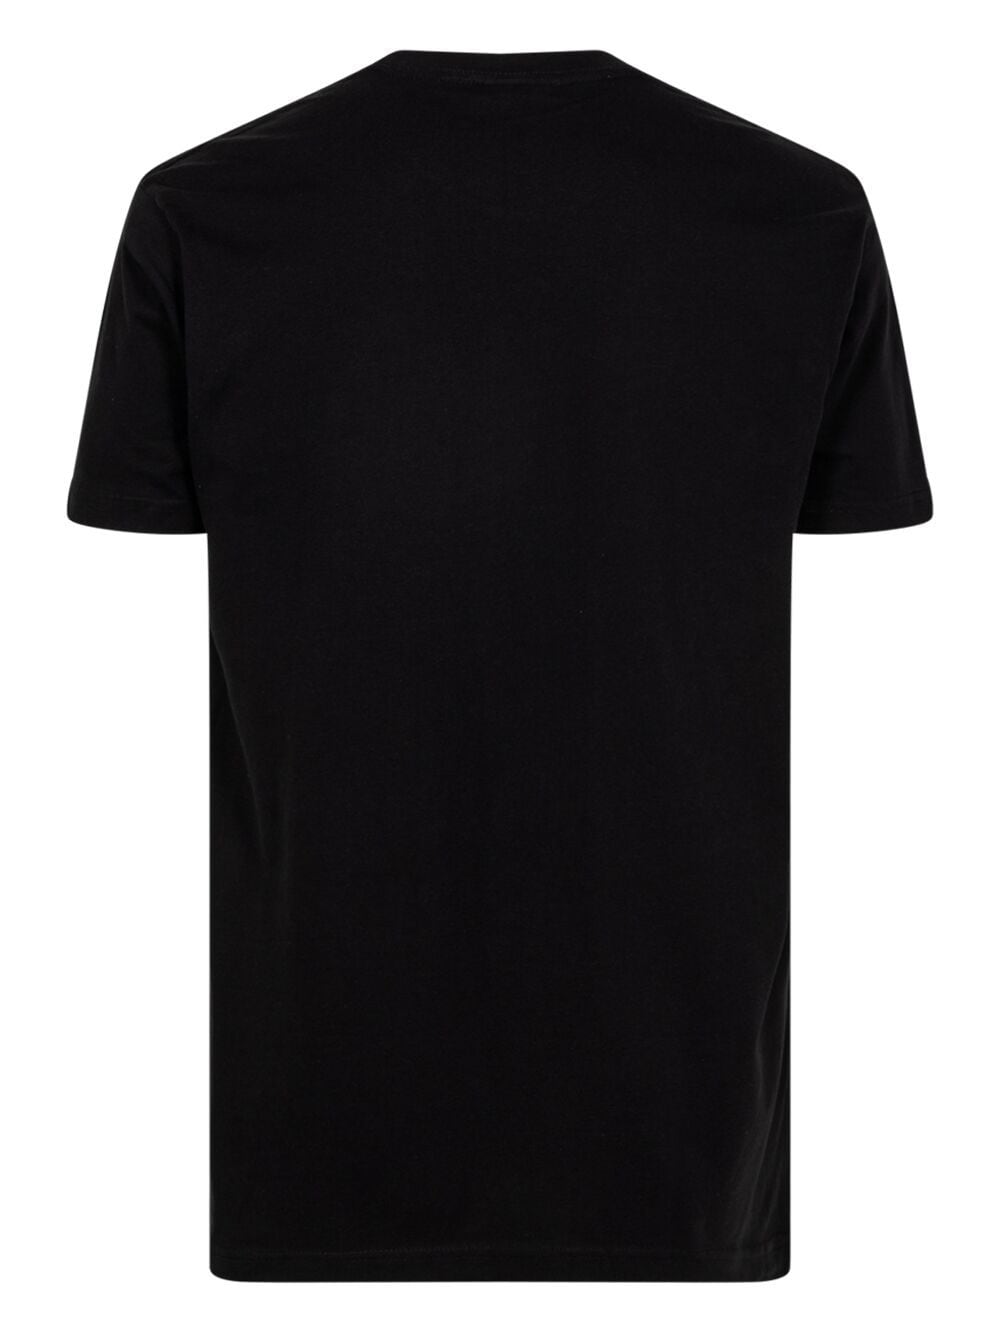 Shop Stadium Goods Boxed Tilt Logo "black" T-shirt